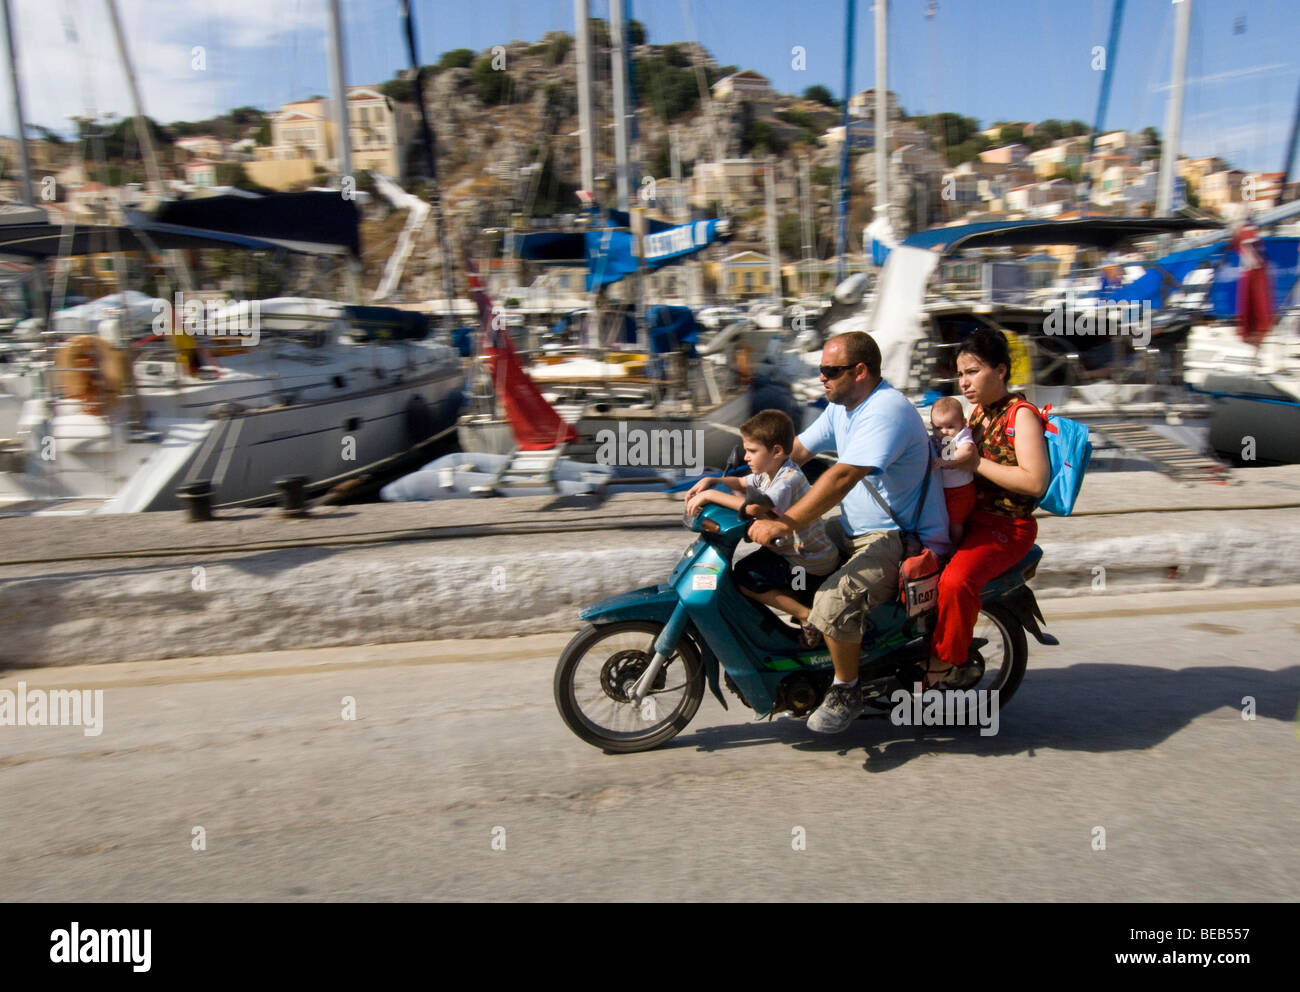 Quatre personnes sur un petit cyclomoteur. Billet d'une famille grecque sur une moto sans casque. Banque D'Images